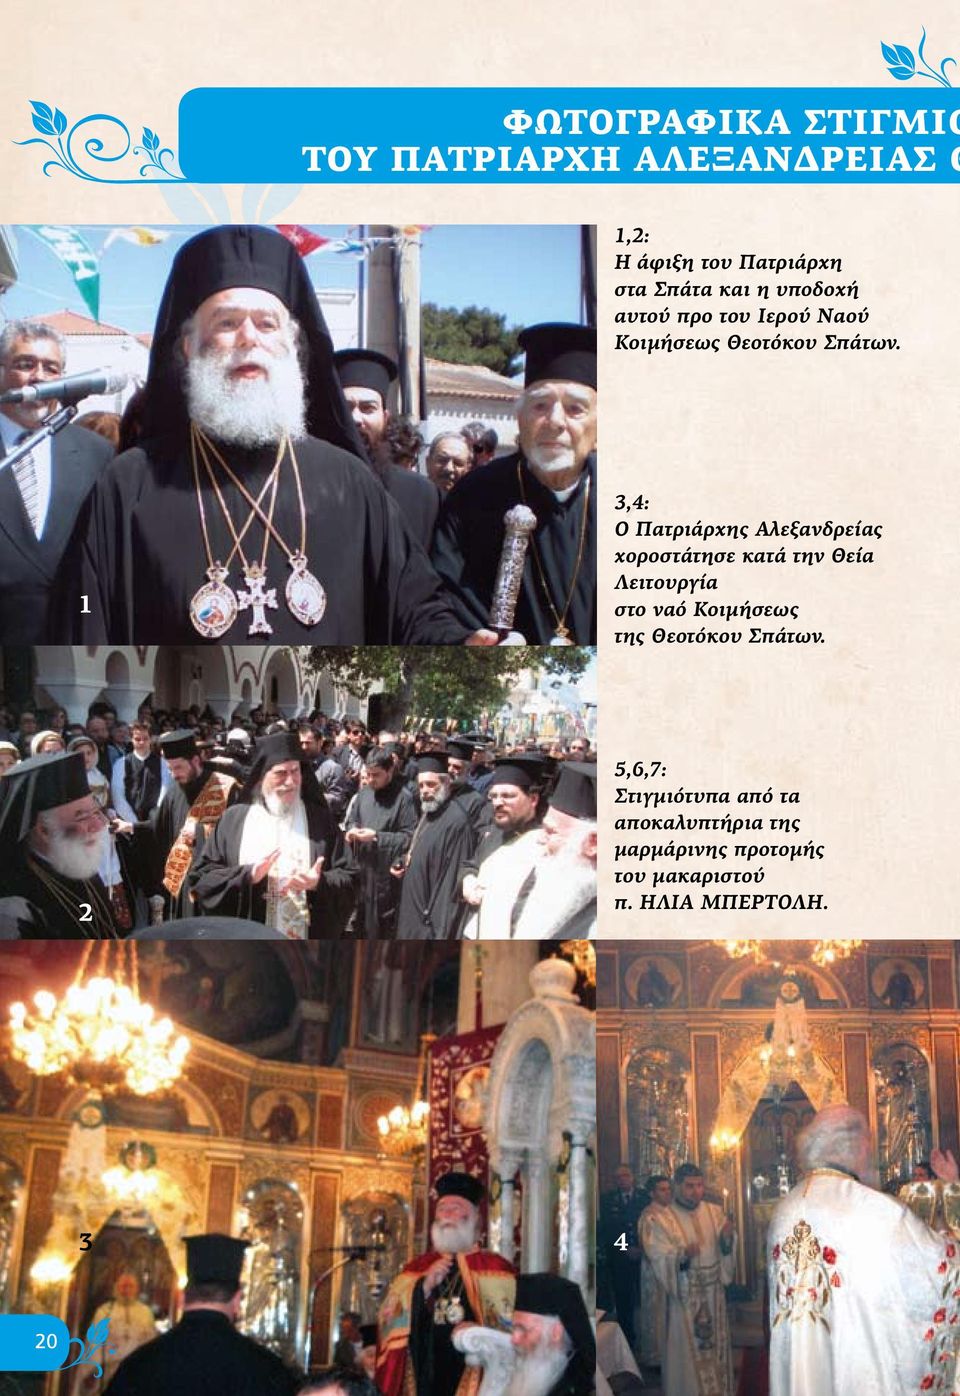 1 3,4: Ο Πατριάρχης Αλεξανδρείας χοροστάτησε κατά την Θεία Λειτουργία στο ναό Κοιμήσεως της